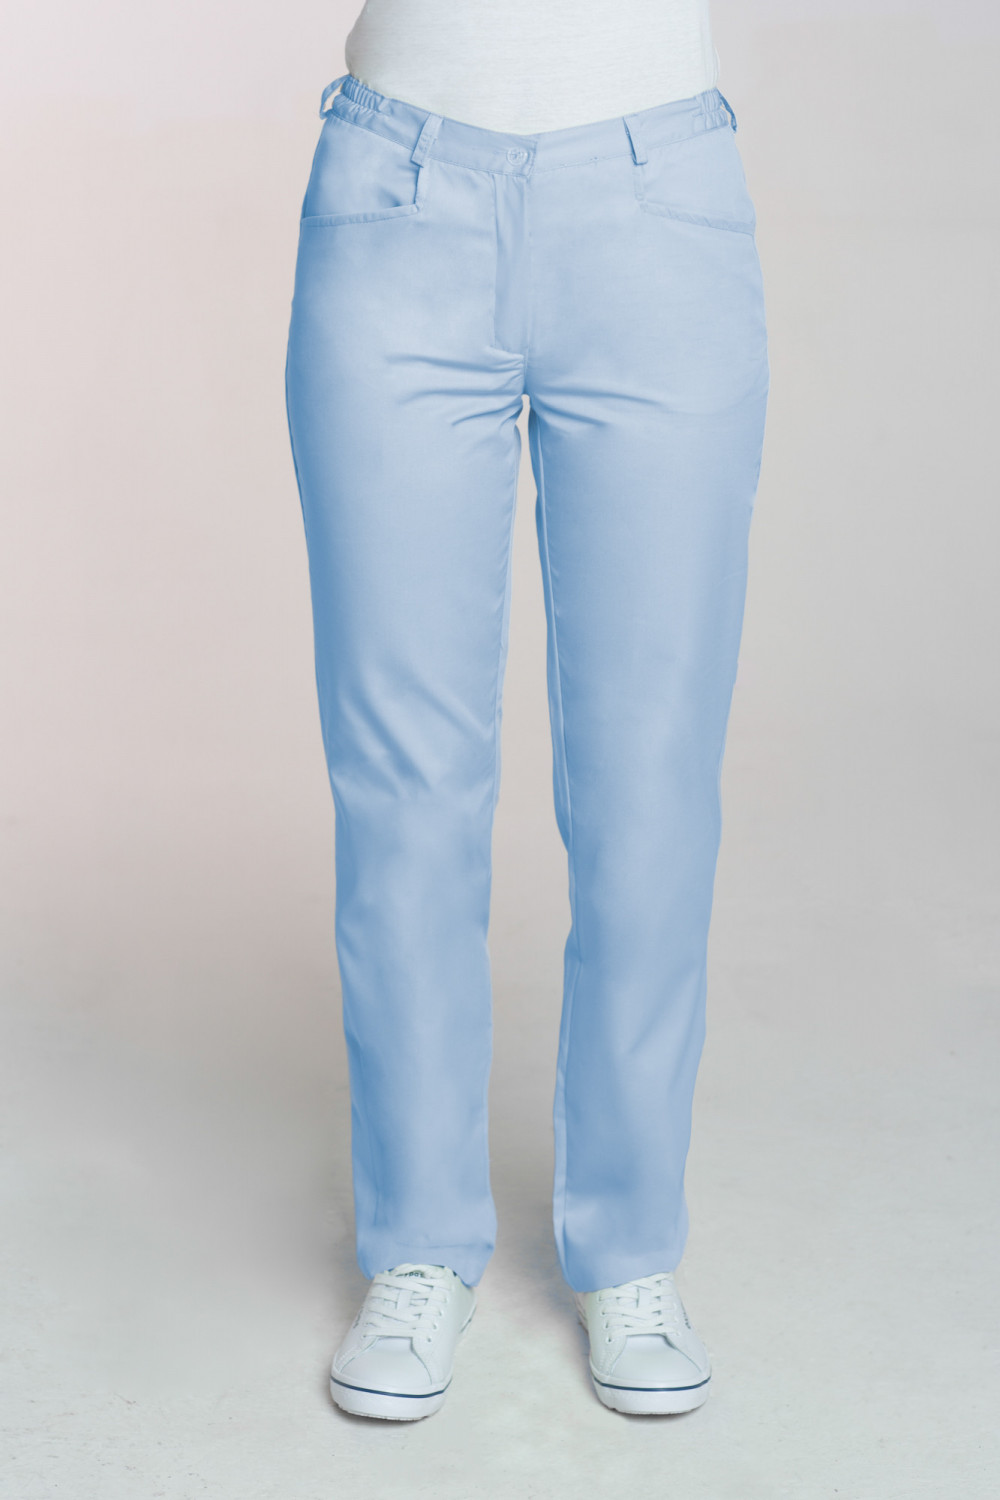 M-348 Spodnie damskie medyczne do fartucha kolor błękit